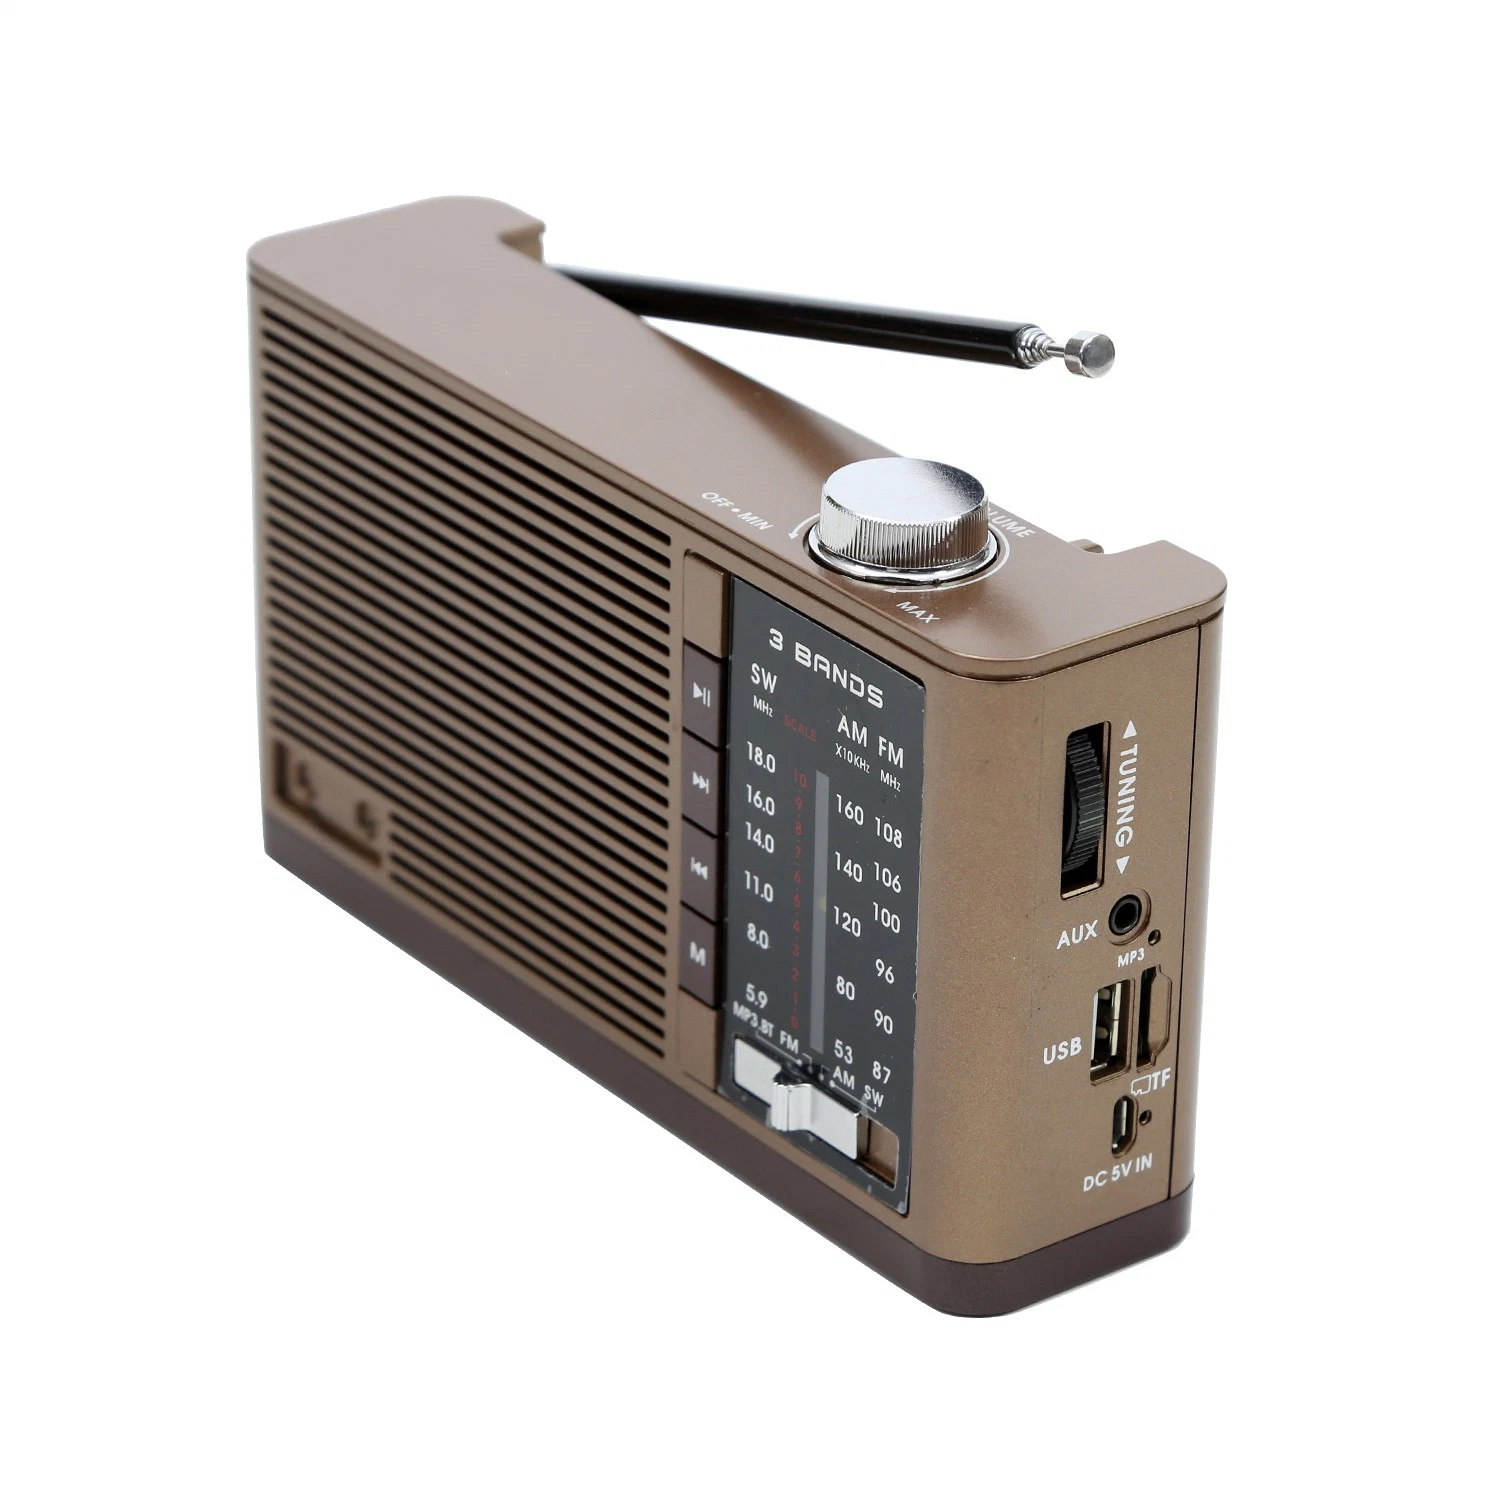 Ligação sem fios Tw92bt Rádio portátil FM 3bands USB TF MP3 Leitor com coluna Bt e entrada DC 5V in Aux in Macaco